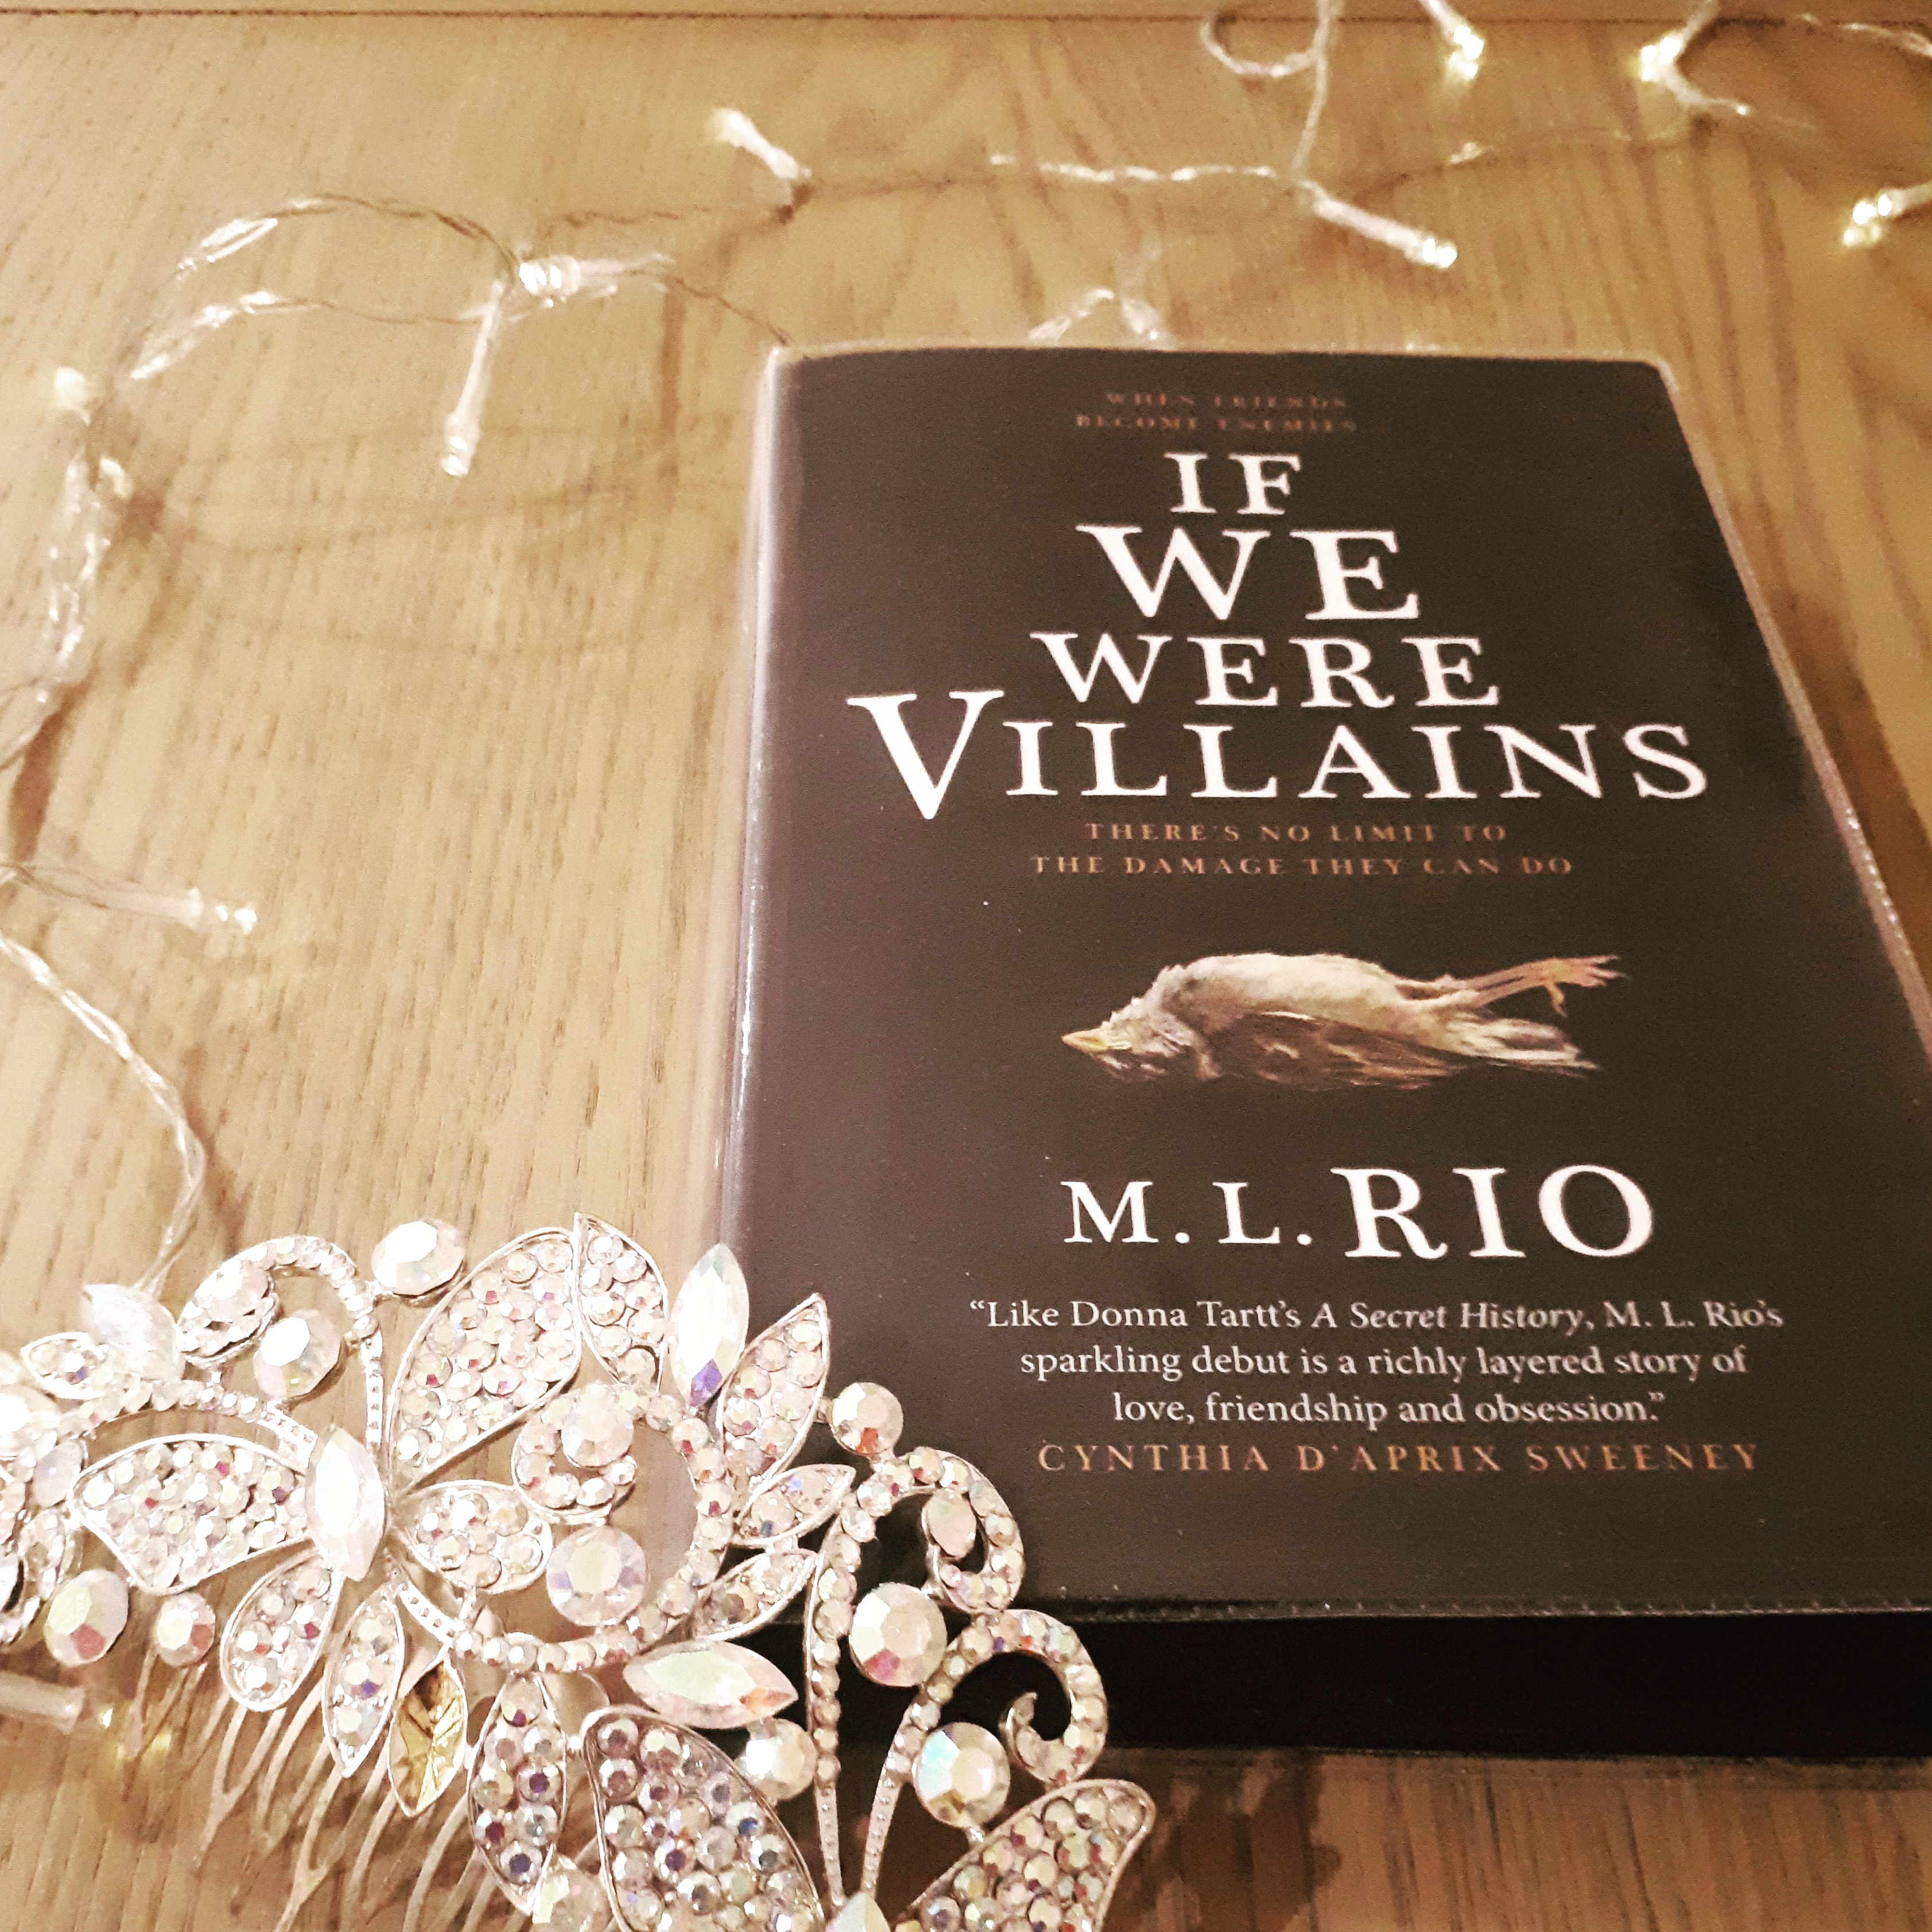 If We Were Villains by M.L. Rio